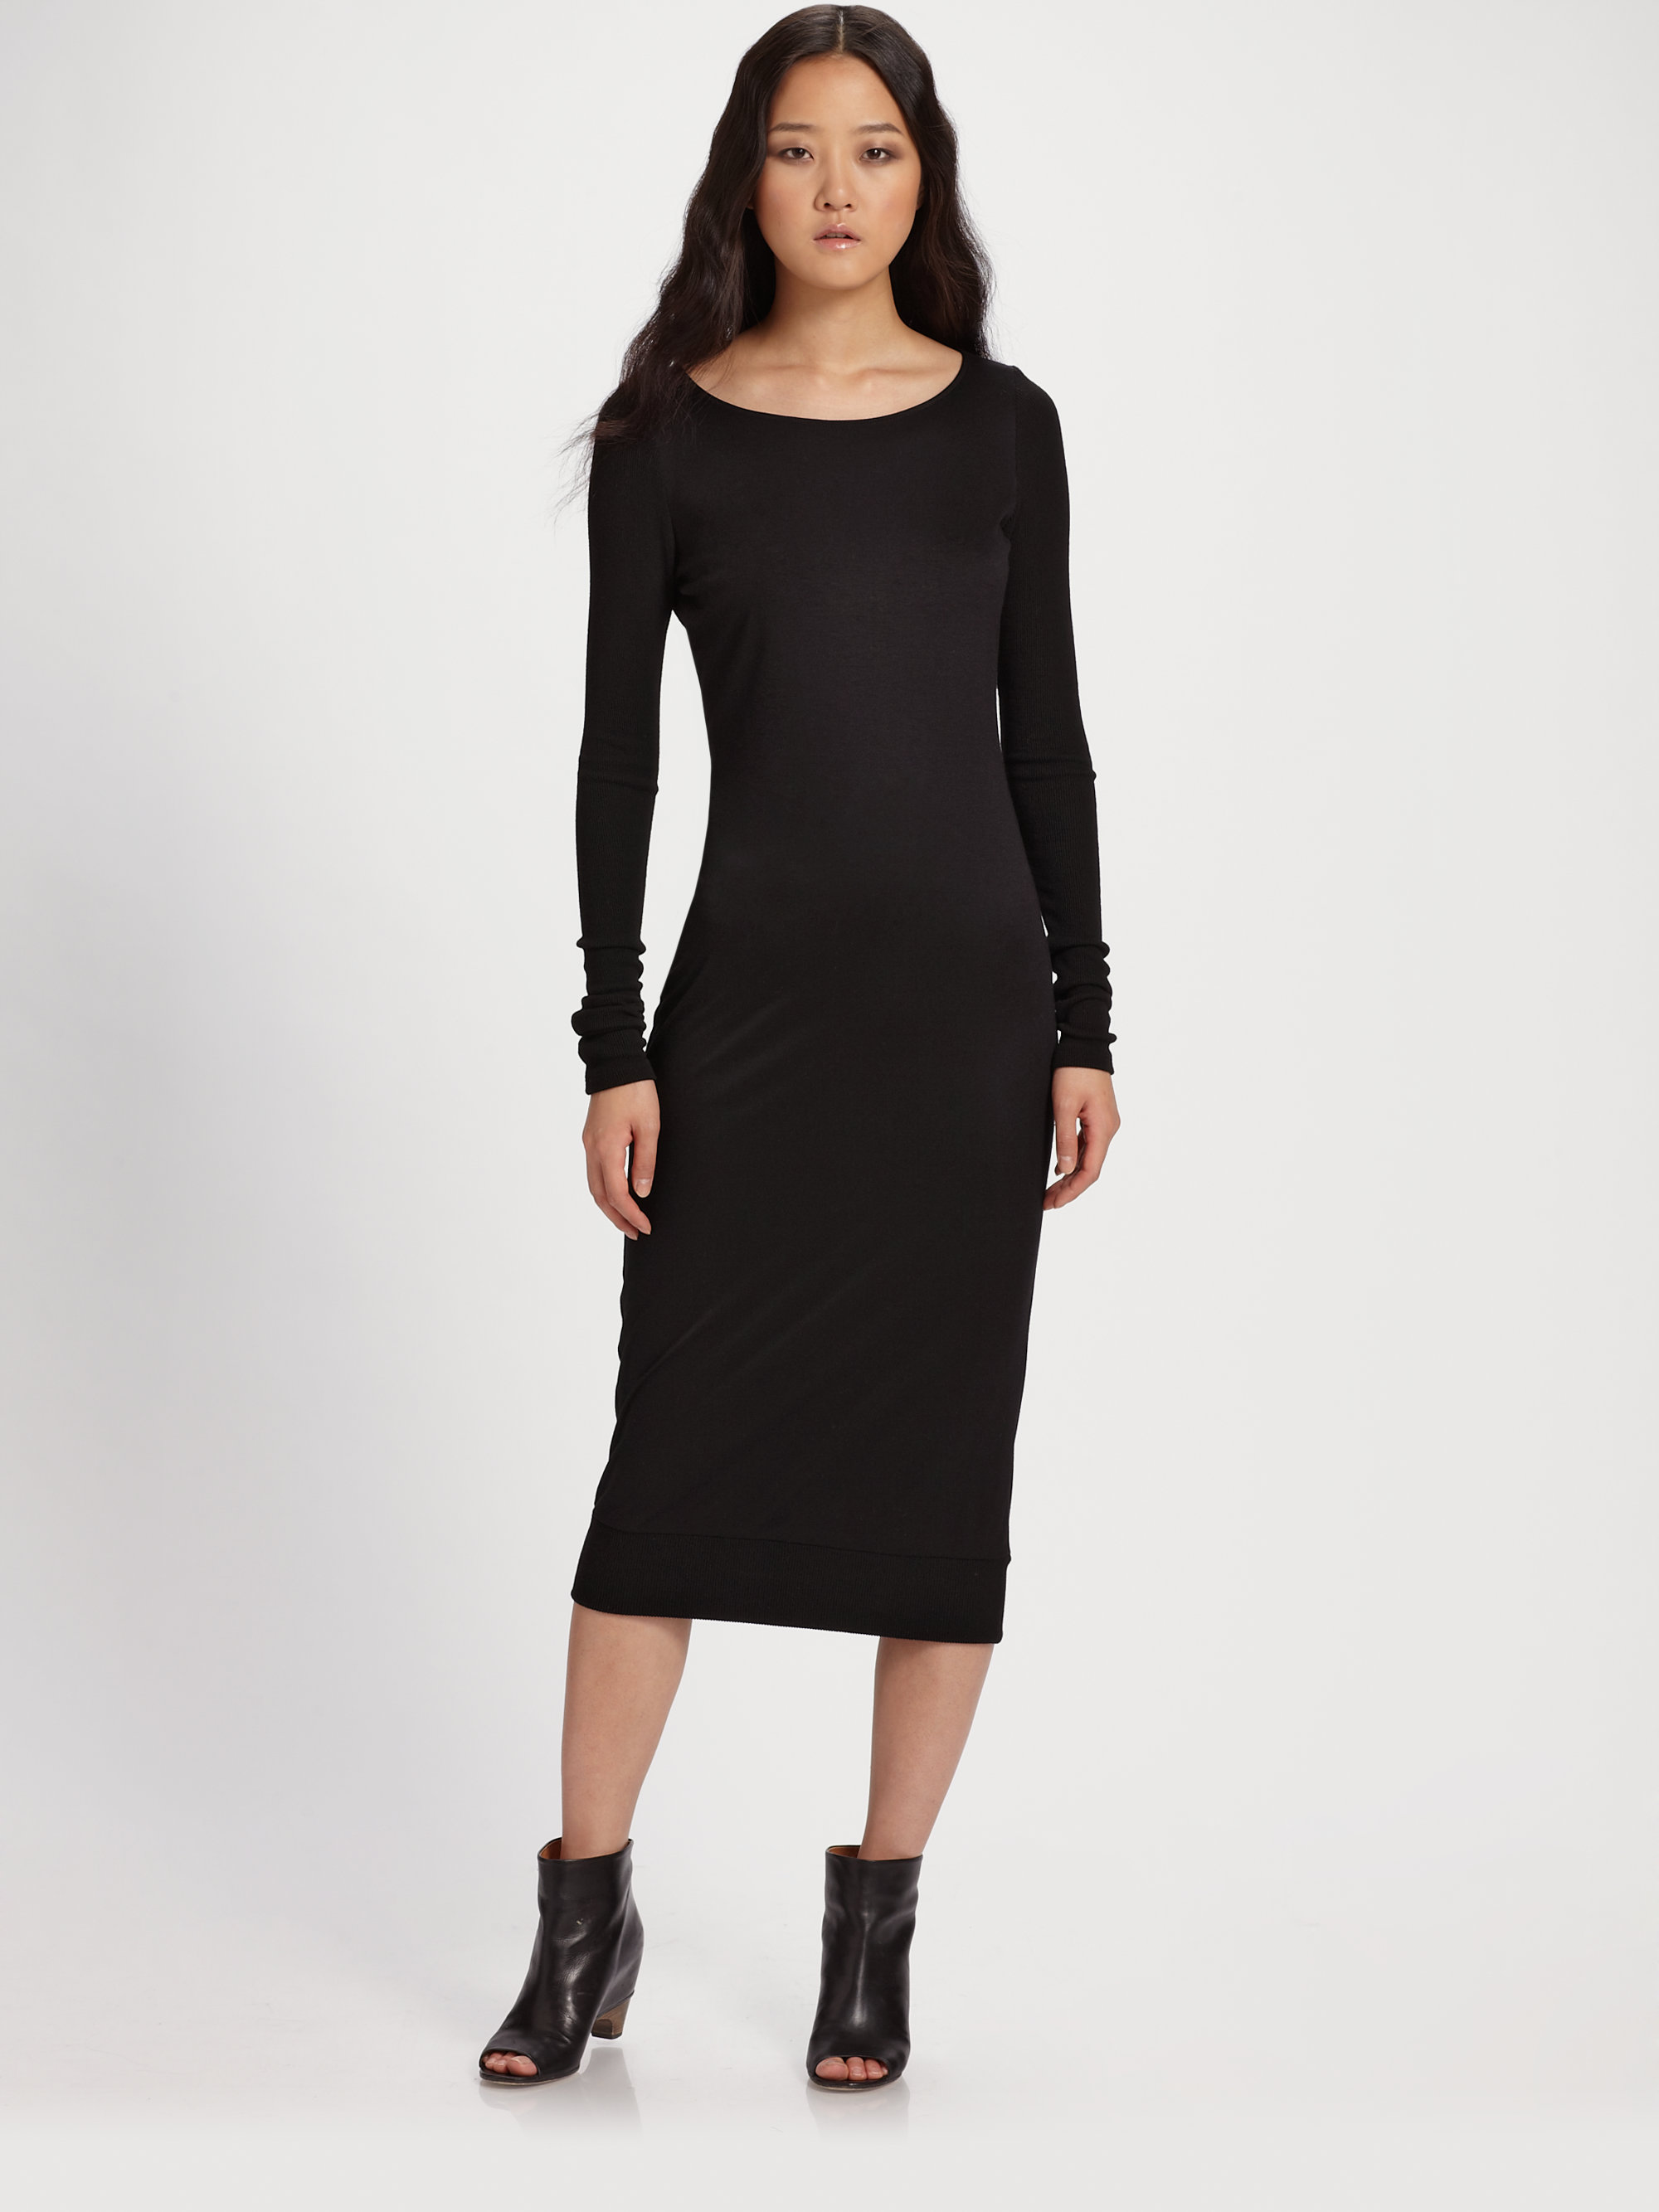 Maggie ward Sleek Jersey Dress in Black | Lyst